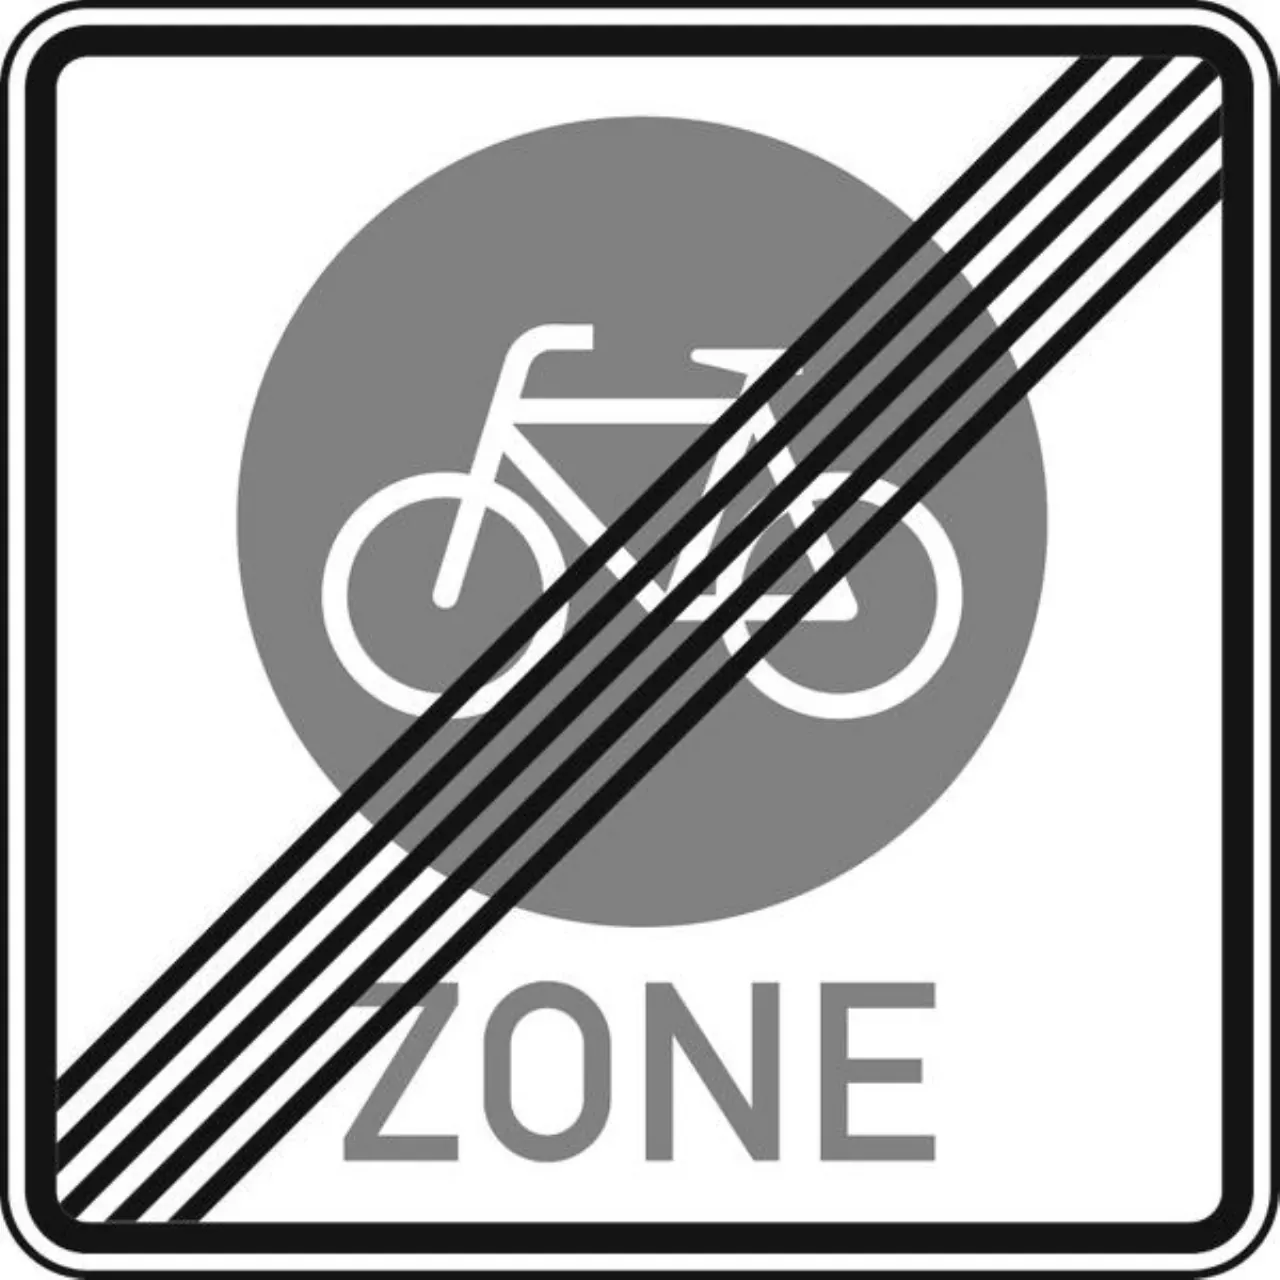 Verkehrszeichen 244.4 Ende einer Fahrradzone - 420x420 2 mm RA1